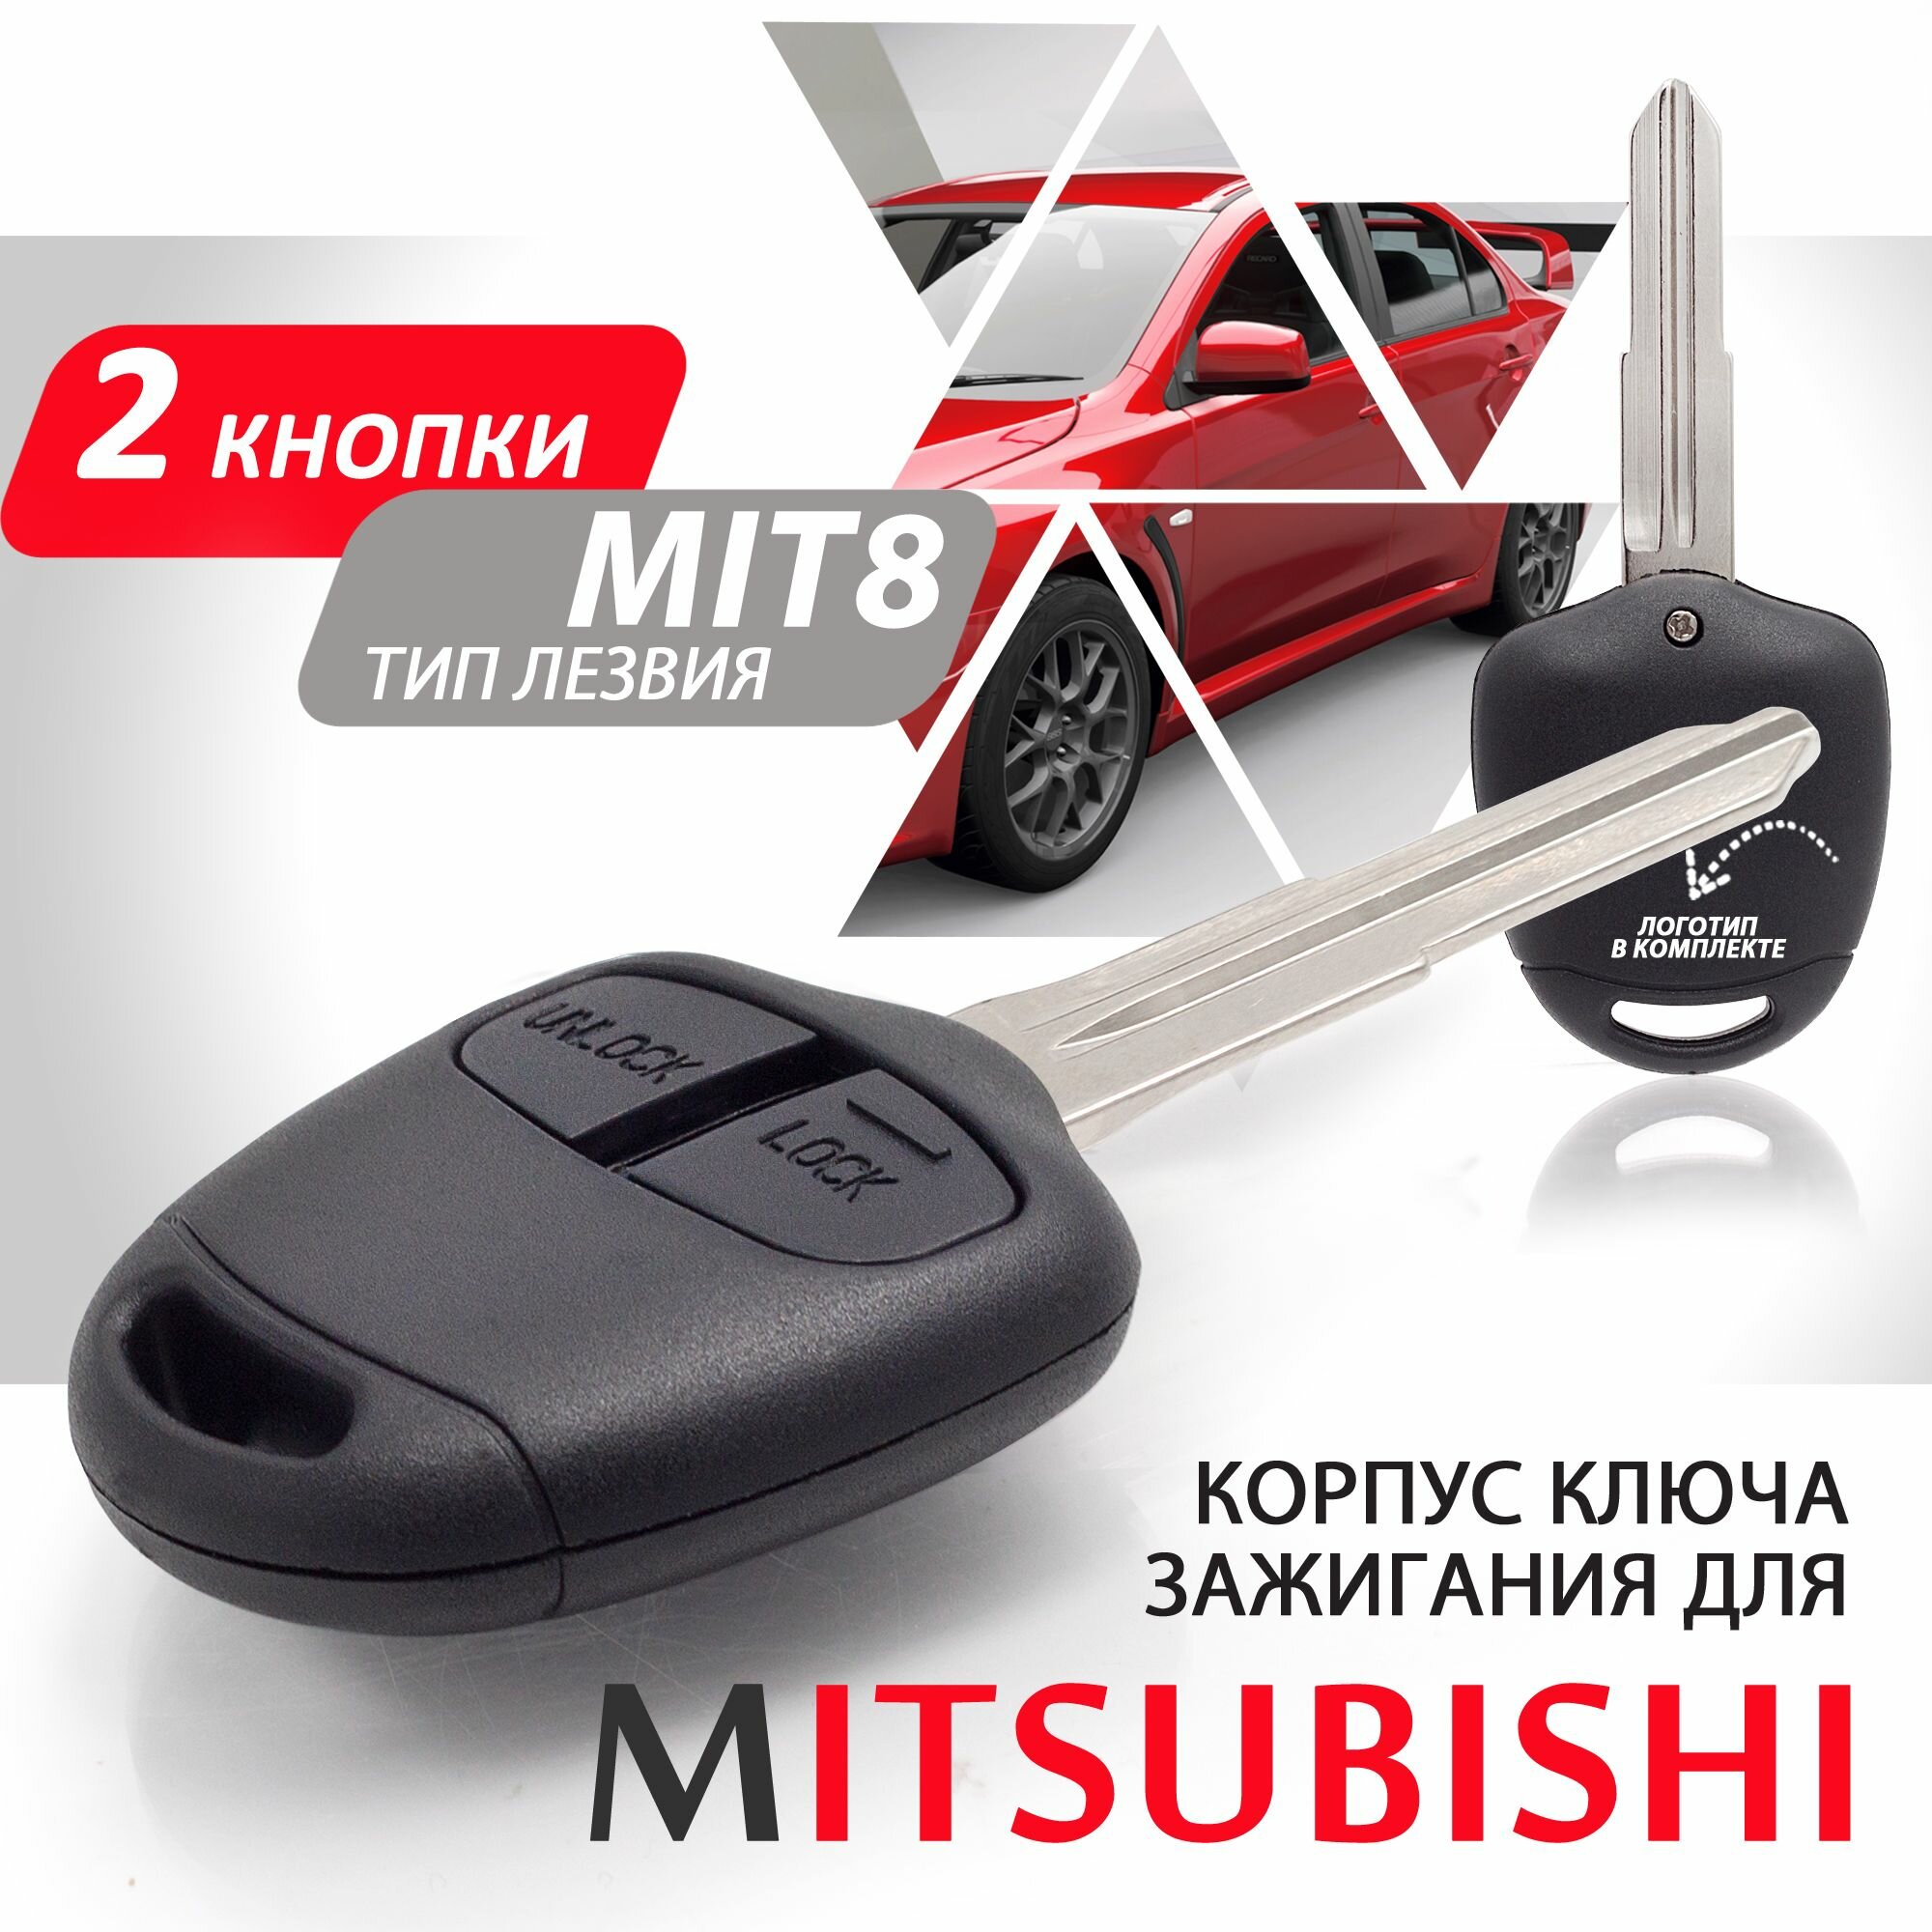 Корпус ключа зажигания для Mitsubishi (2 кнопки, лезвие MIT8) / брелок автомобильный мицубиси